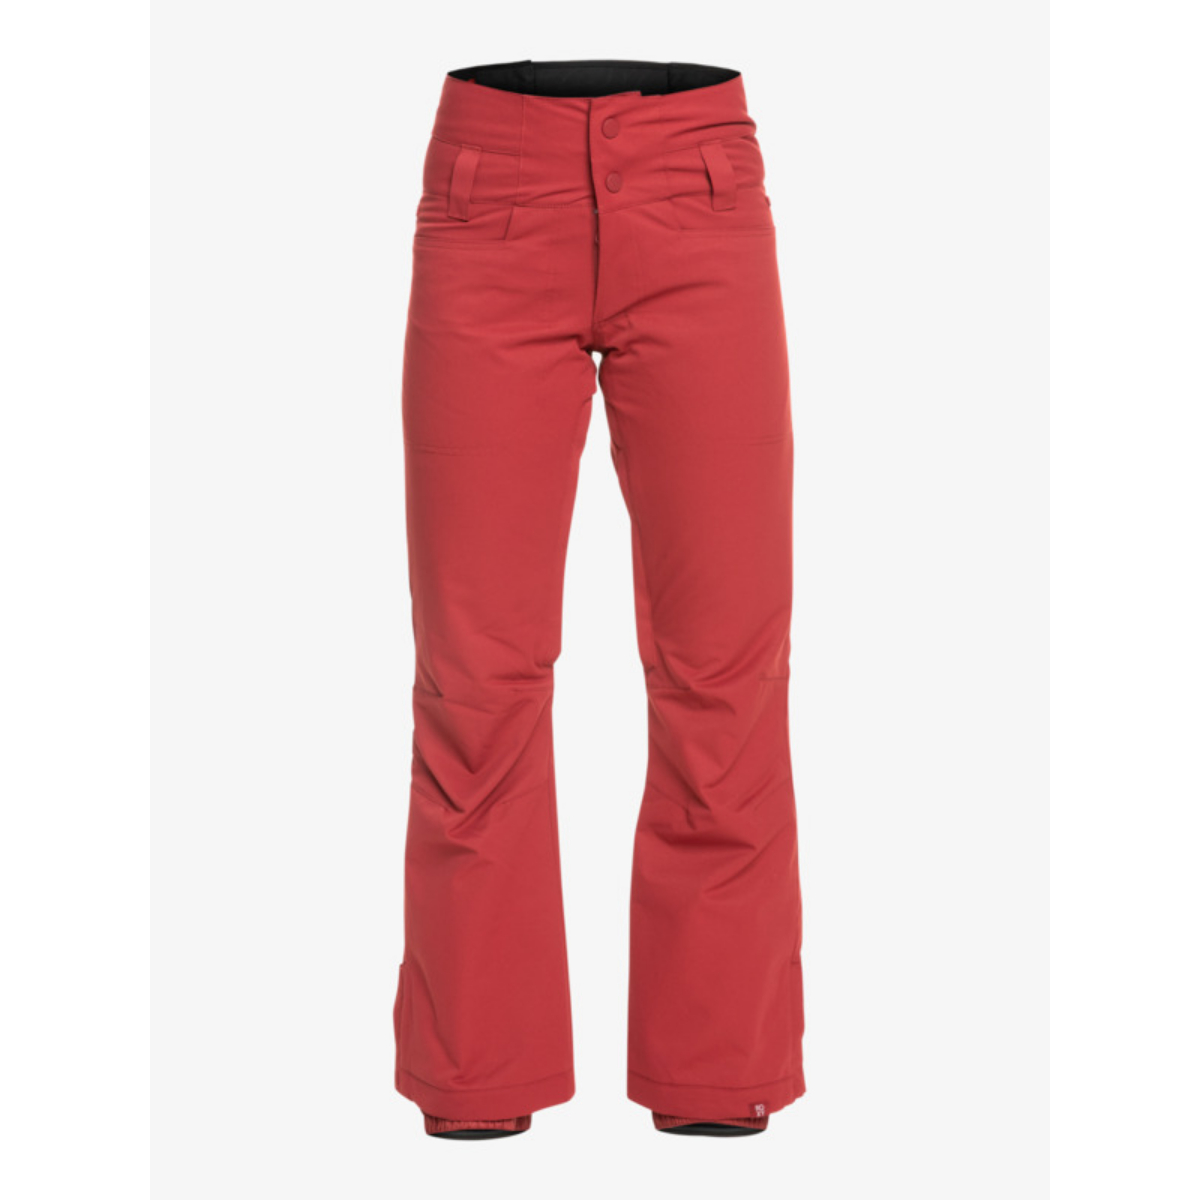 ROXY Winterbreak - Snow Pants for Women BEET RED